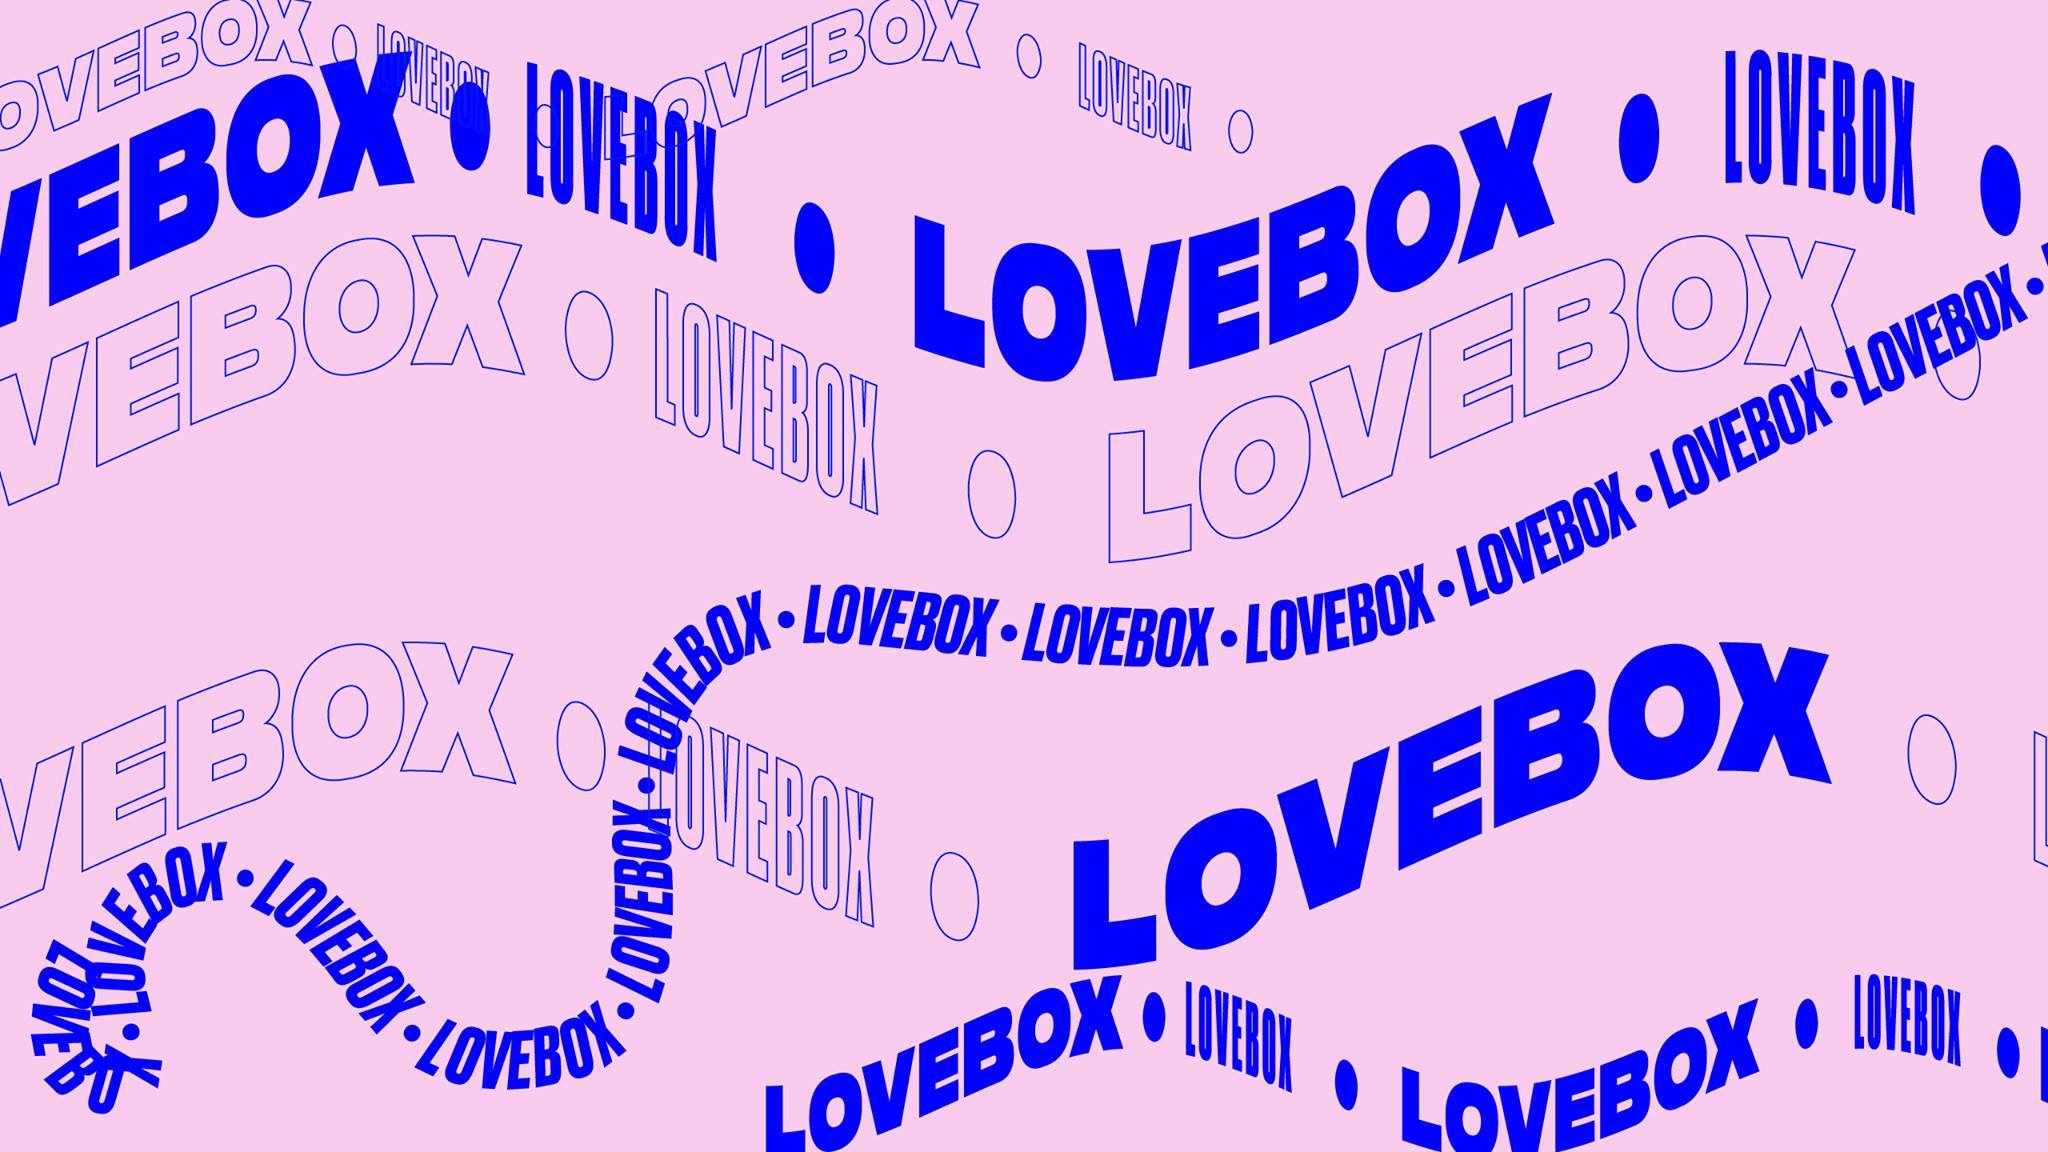 Lovebox Music Festival - Best UK Music Festivals 2022